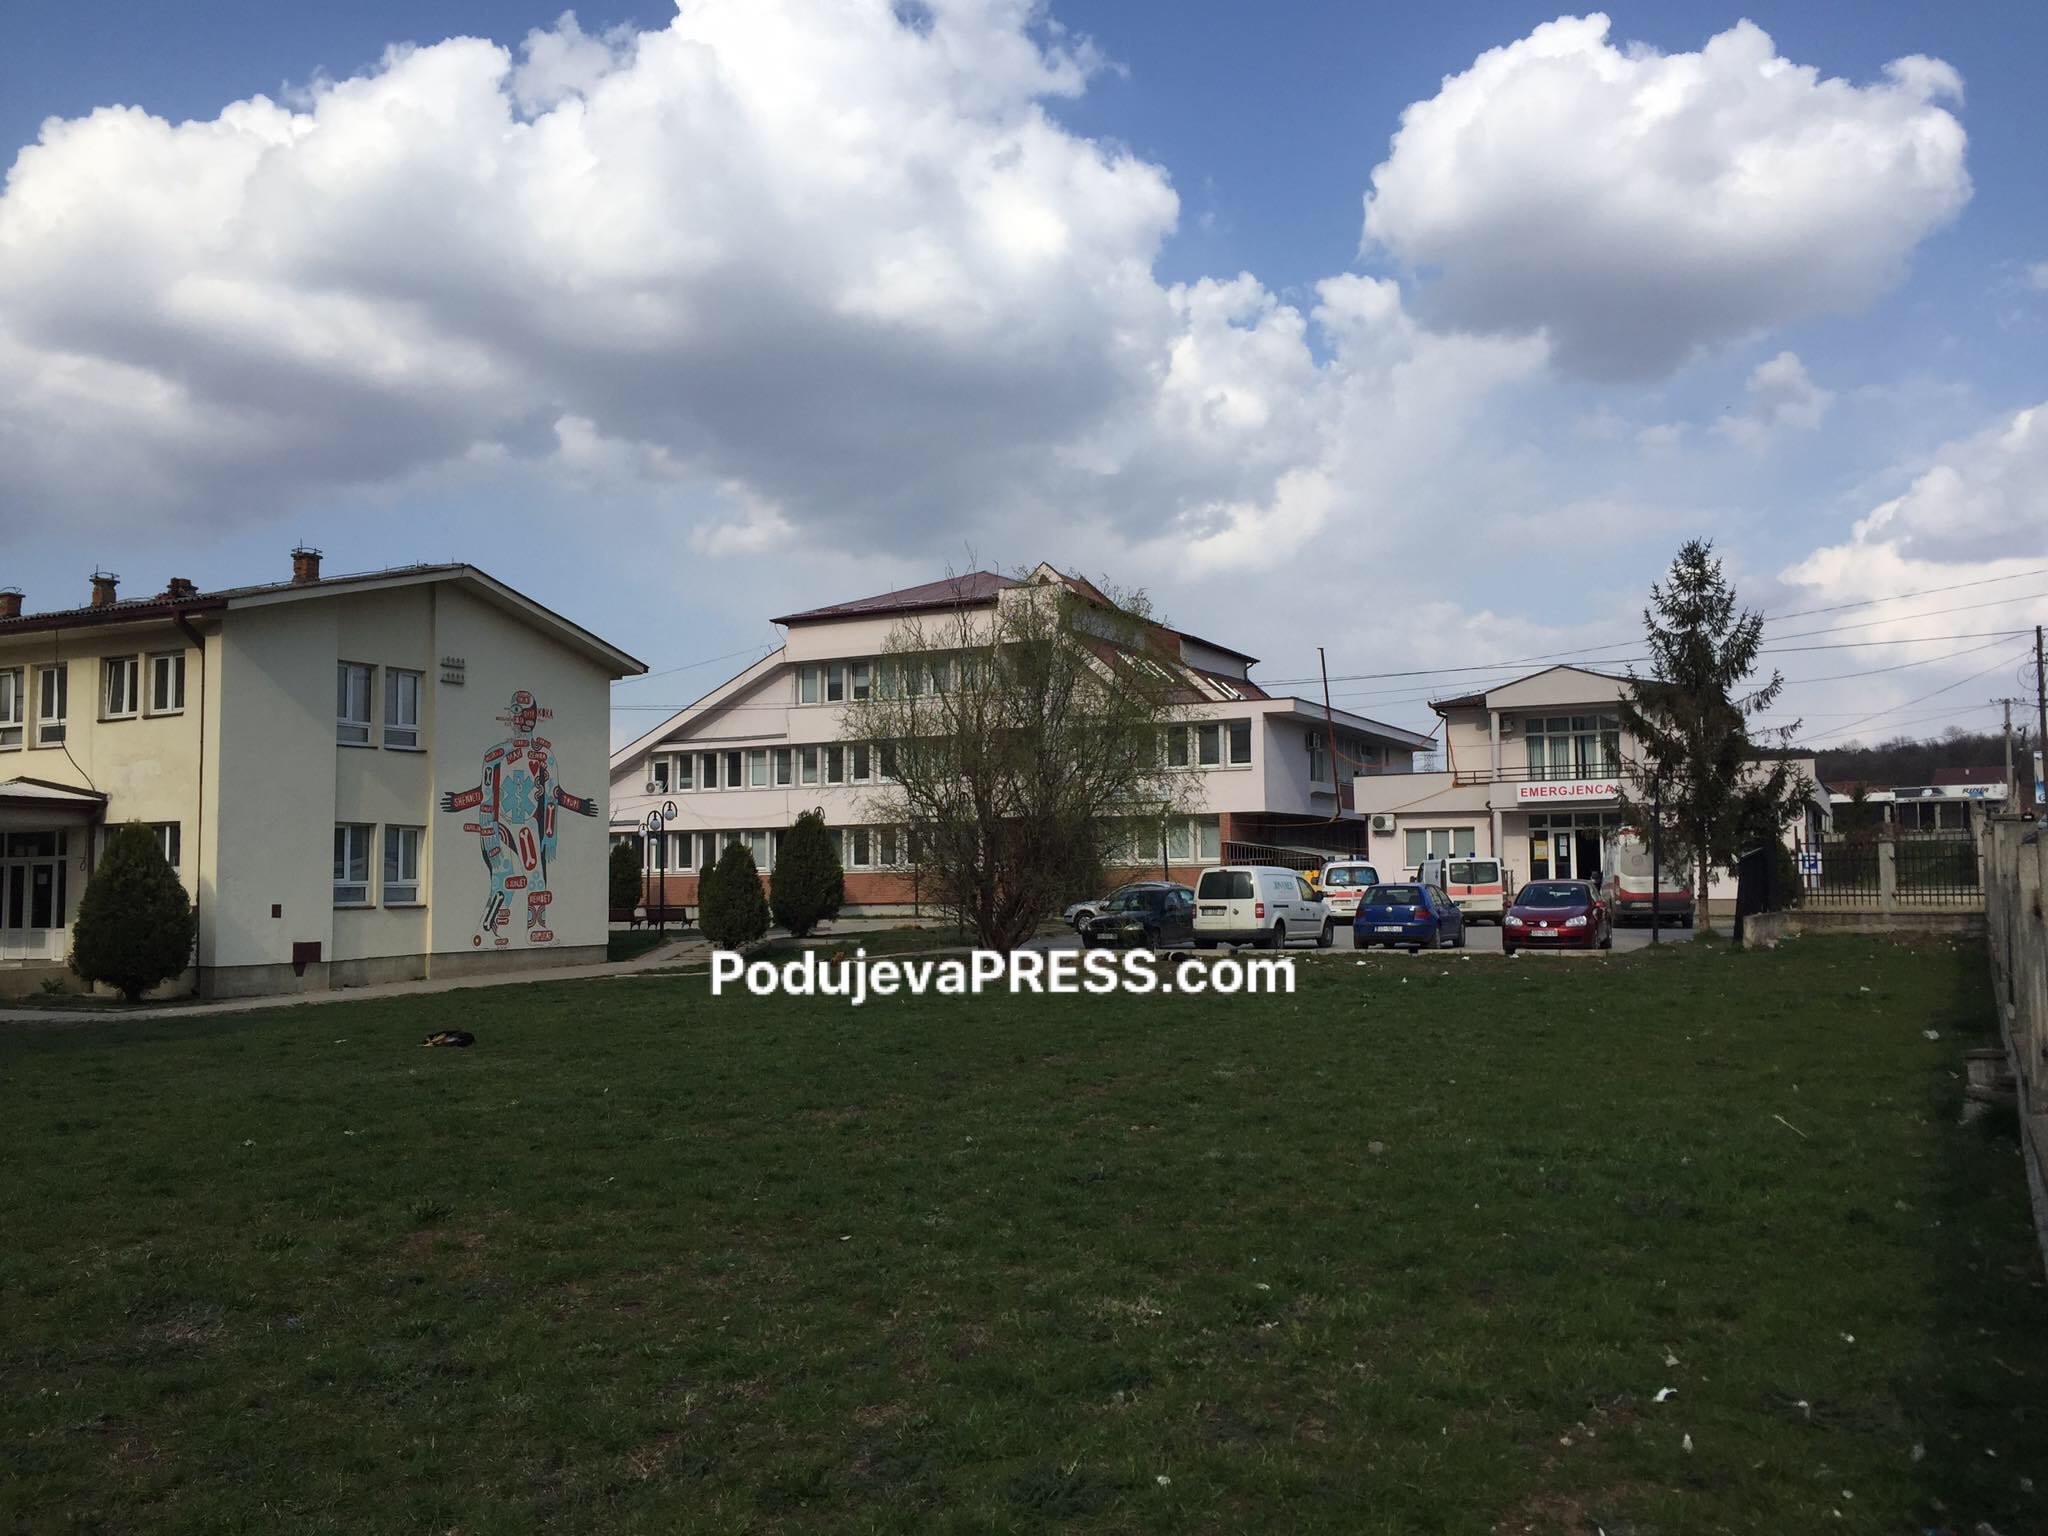  8 infermierë pa kontrata të rregullta, ankohet Sindikata e QKMF-së në Podujevë